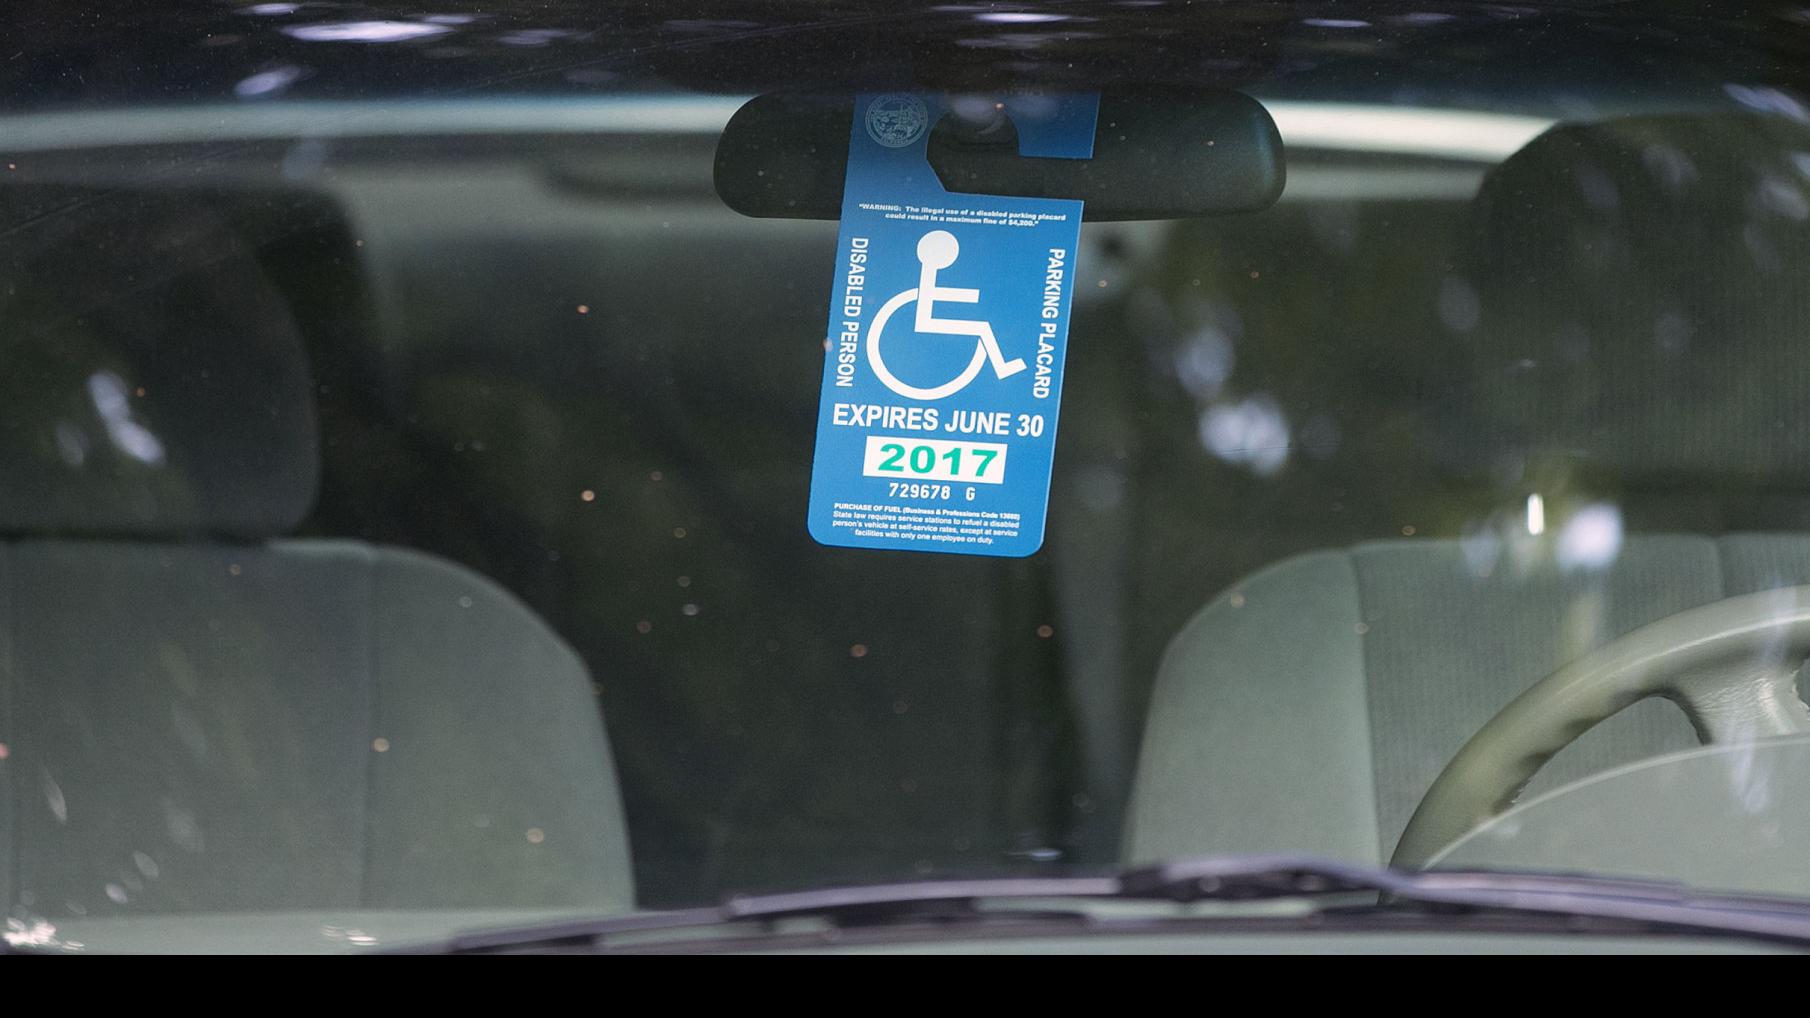 fake handicap parking ticket printable